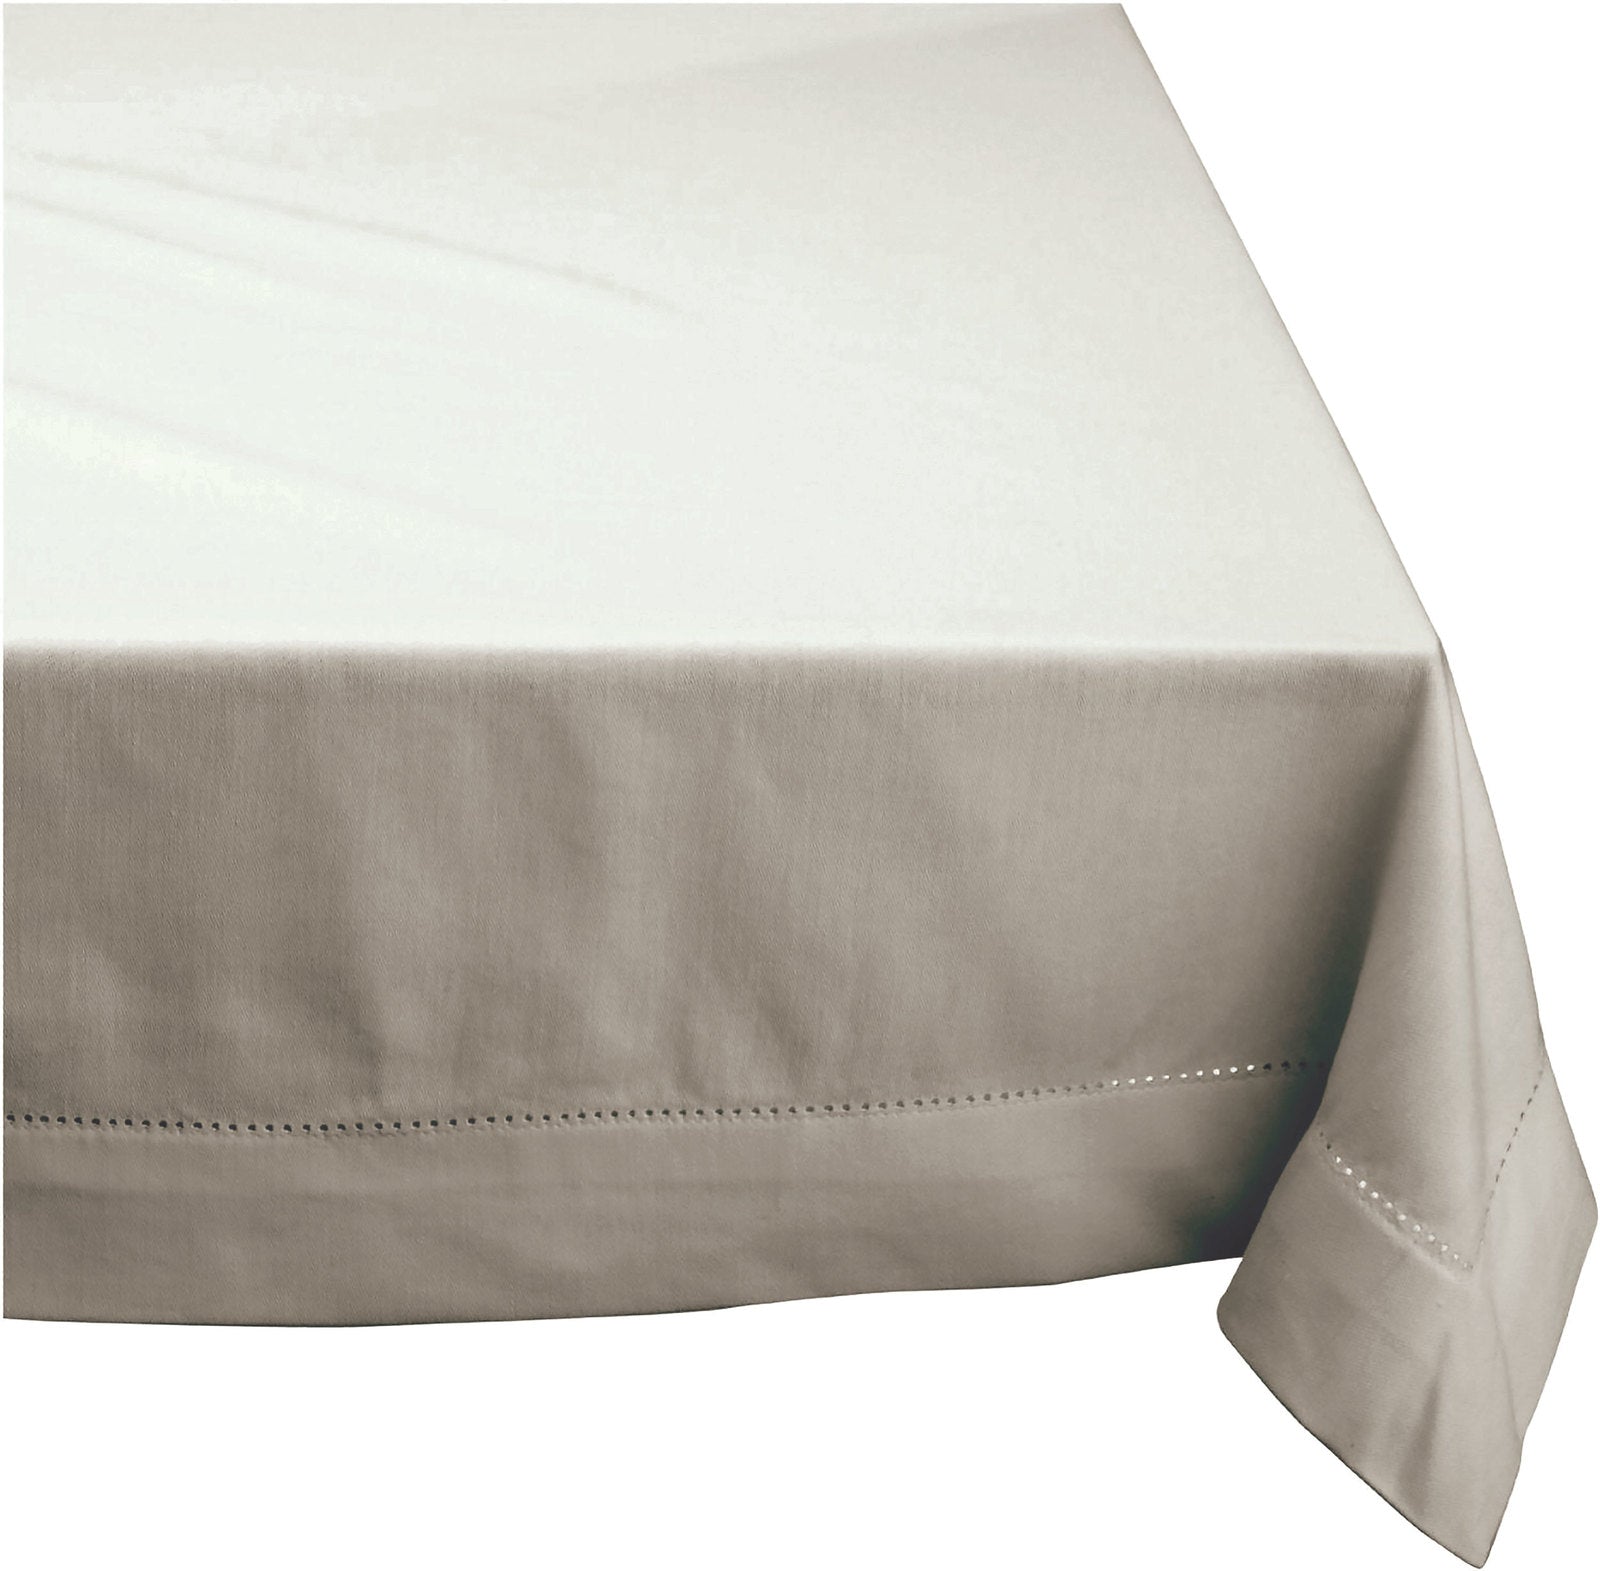 Elegant Hemstitch Tablecloth - 100% Cotton - 150x260cm in Grey